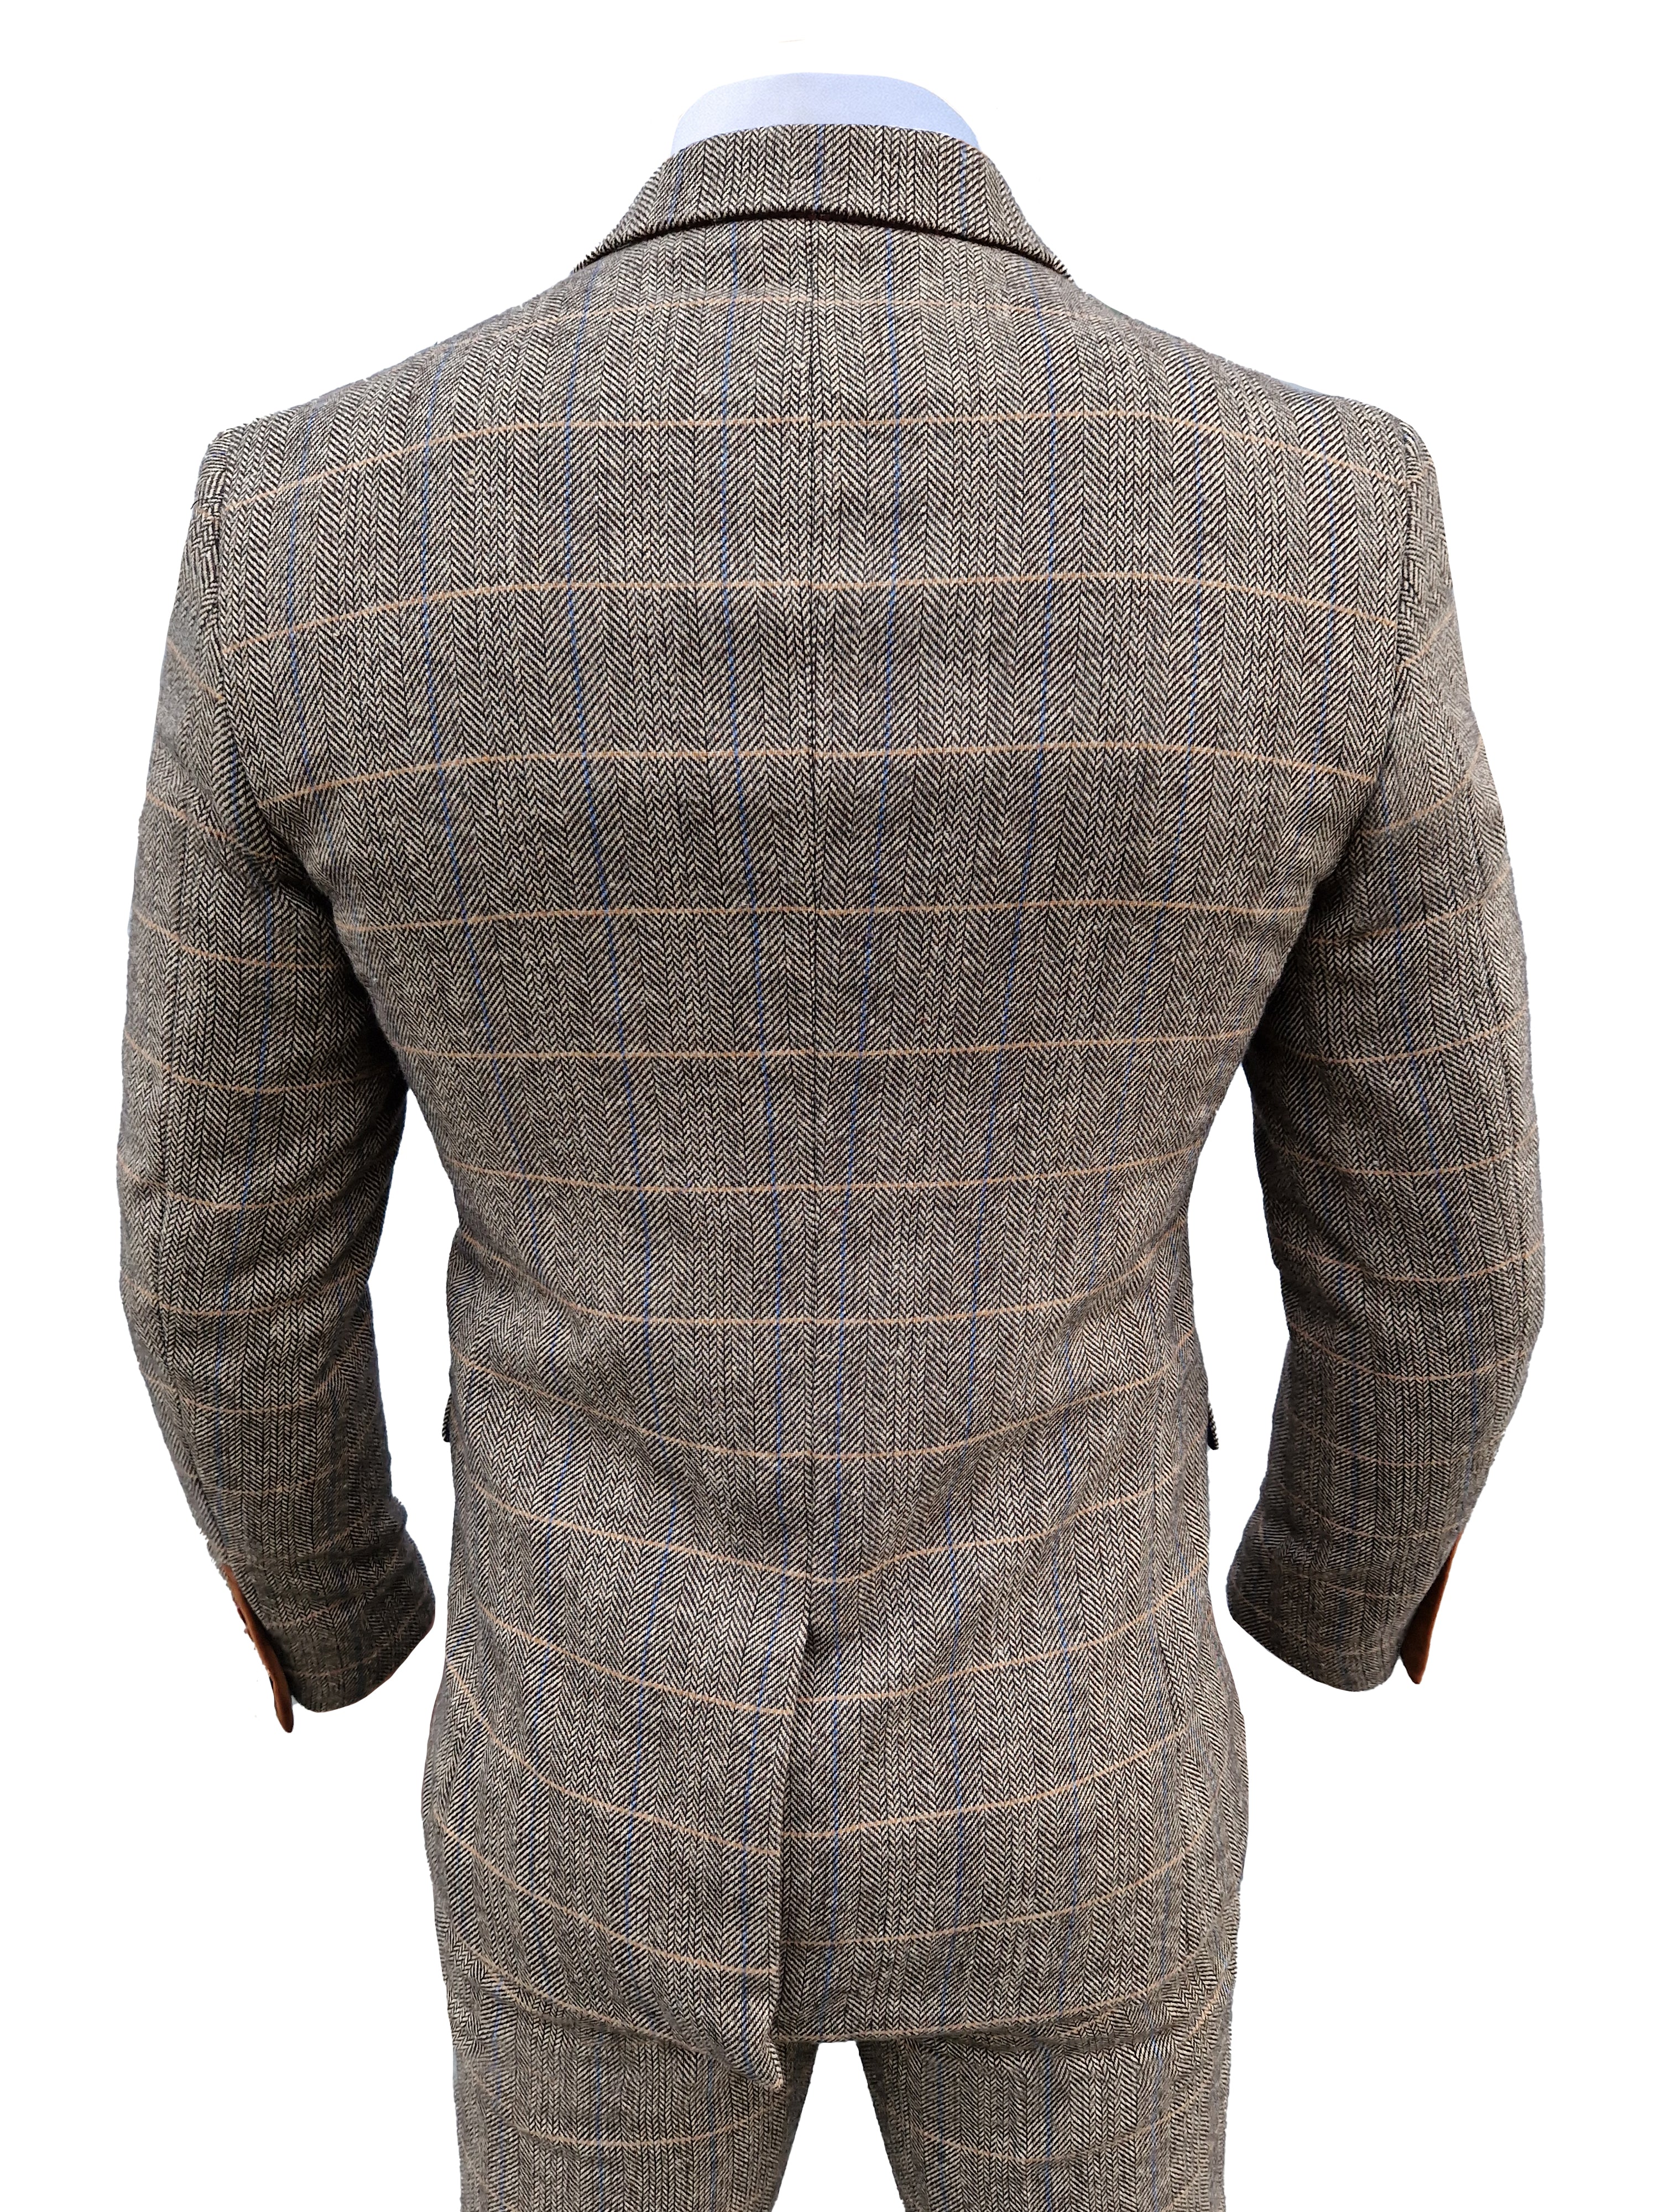 Mix and match - 3-piece Men's Suit Herringbone Brown/Navy